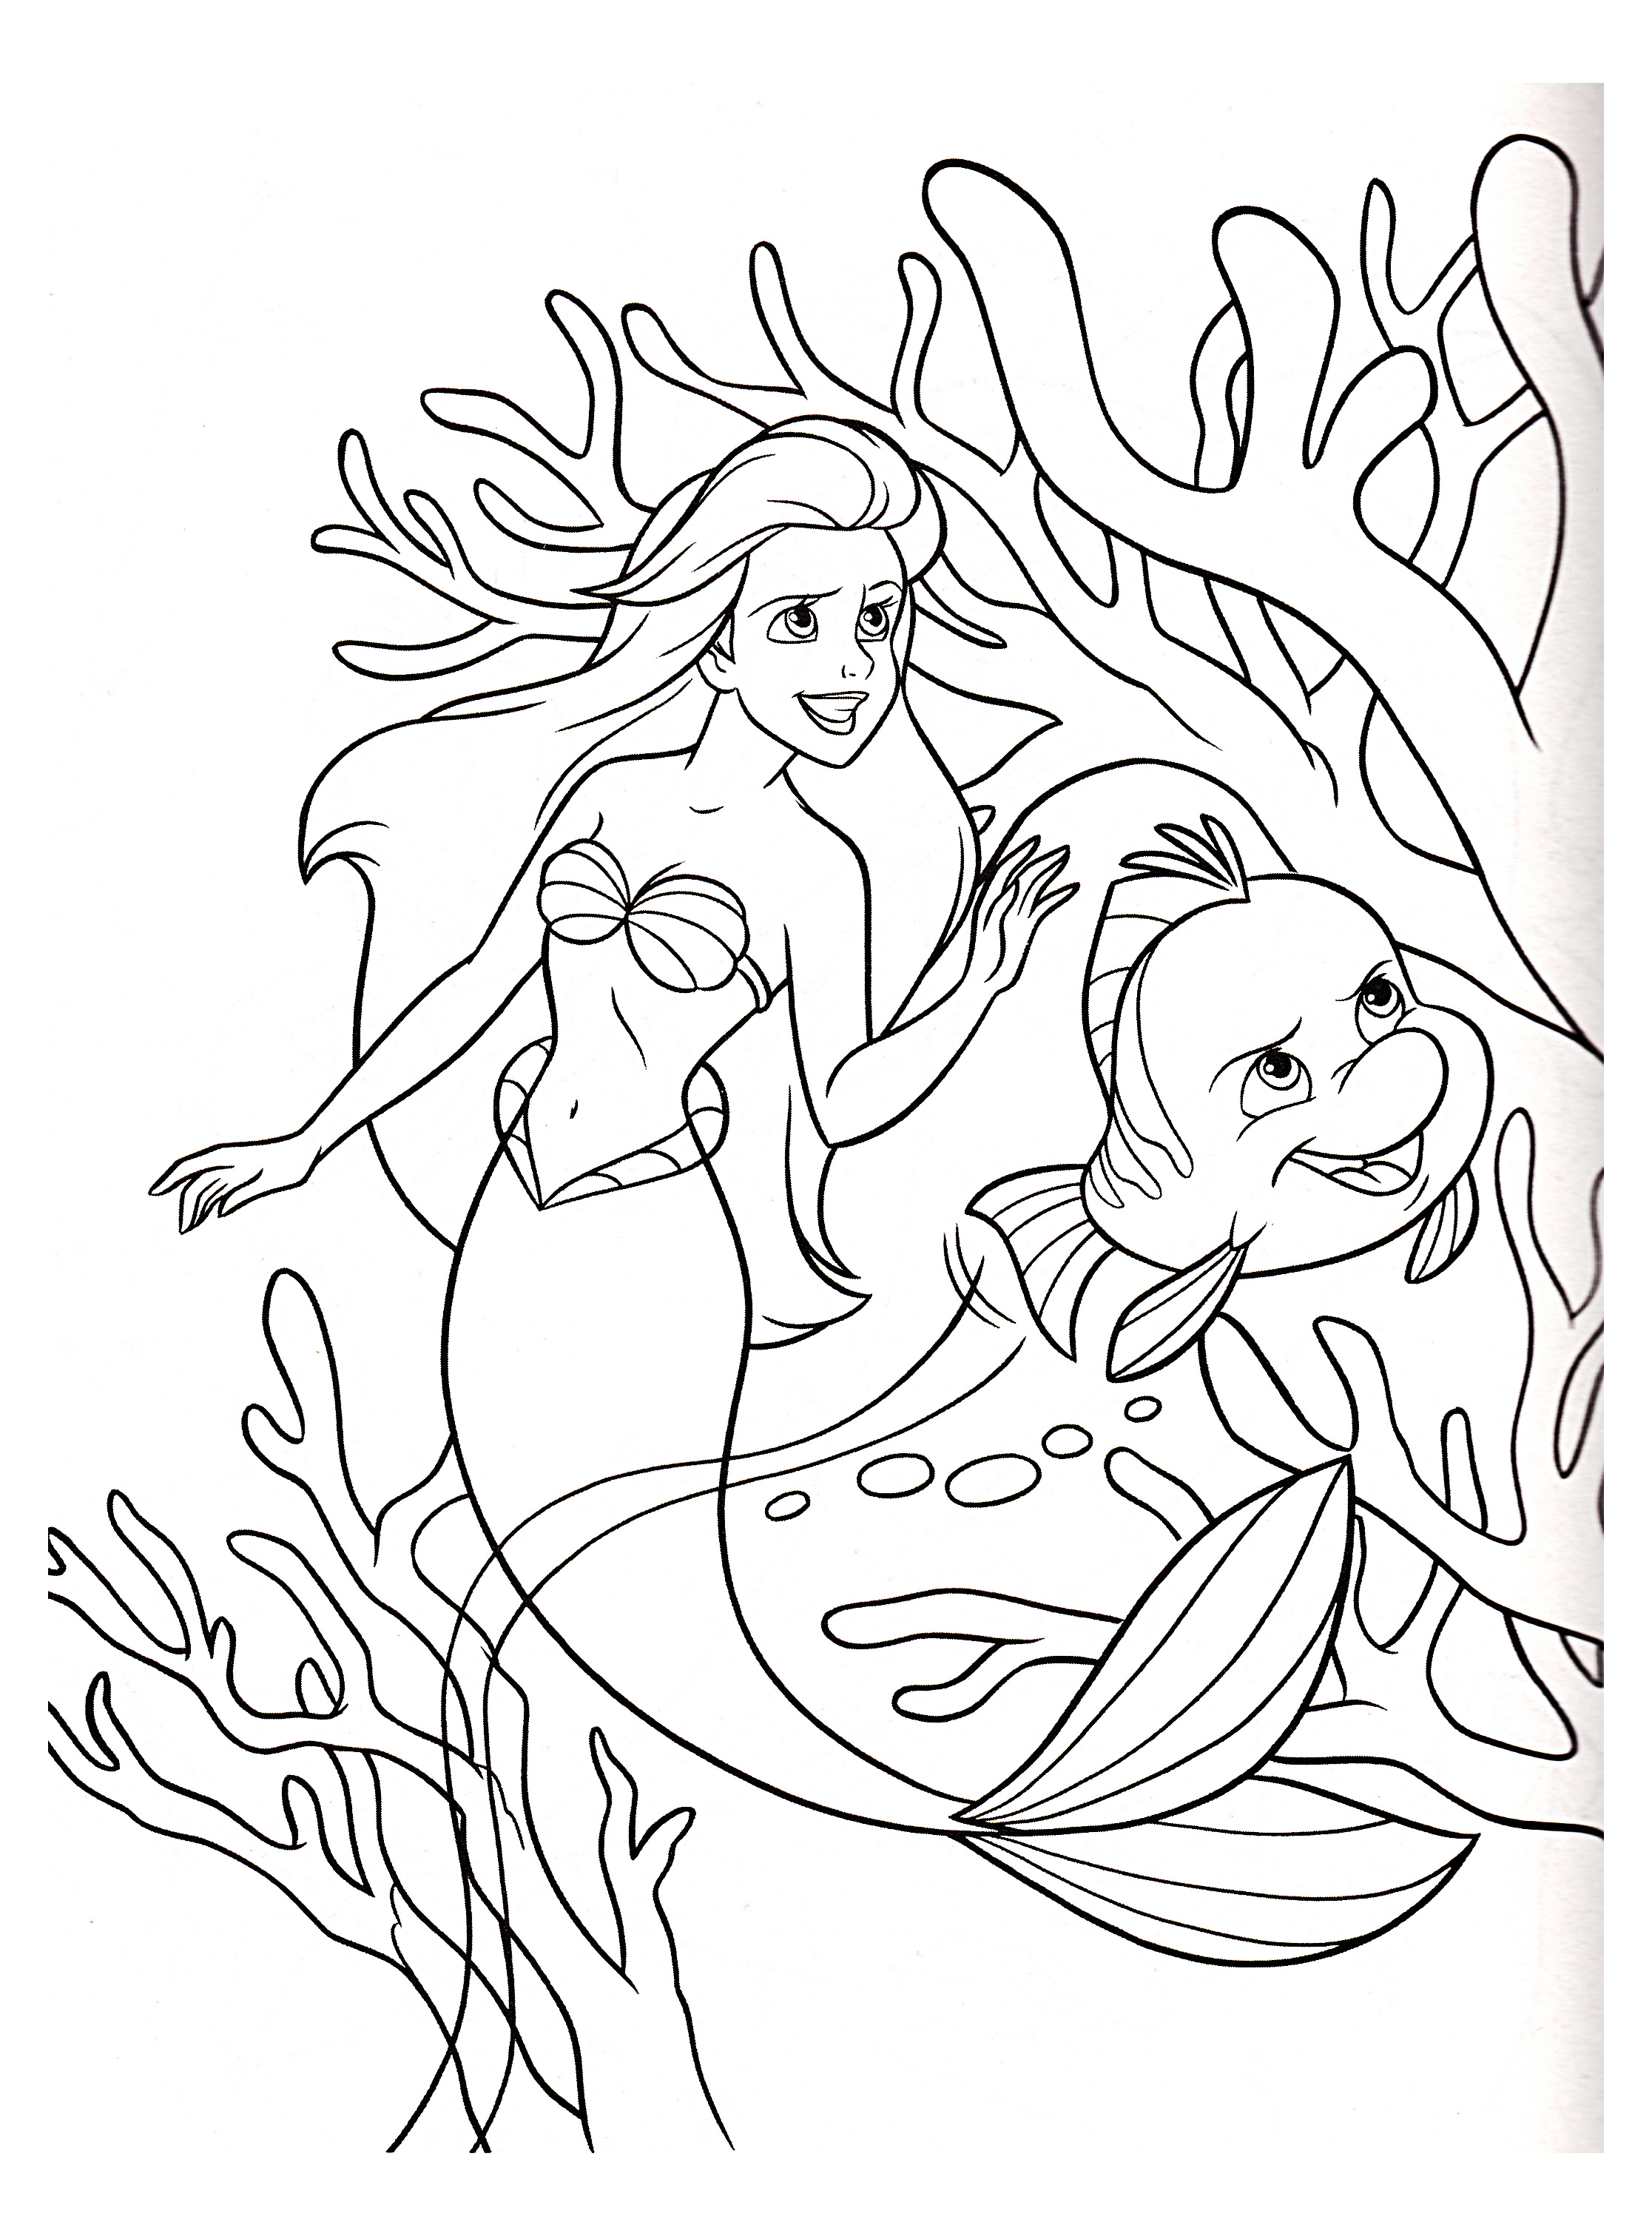 Magnifique coloriage d'un chef d'oeuvre de Disney des années 90 : Ariel la petite sirène